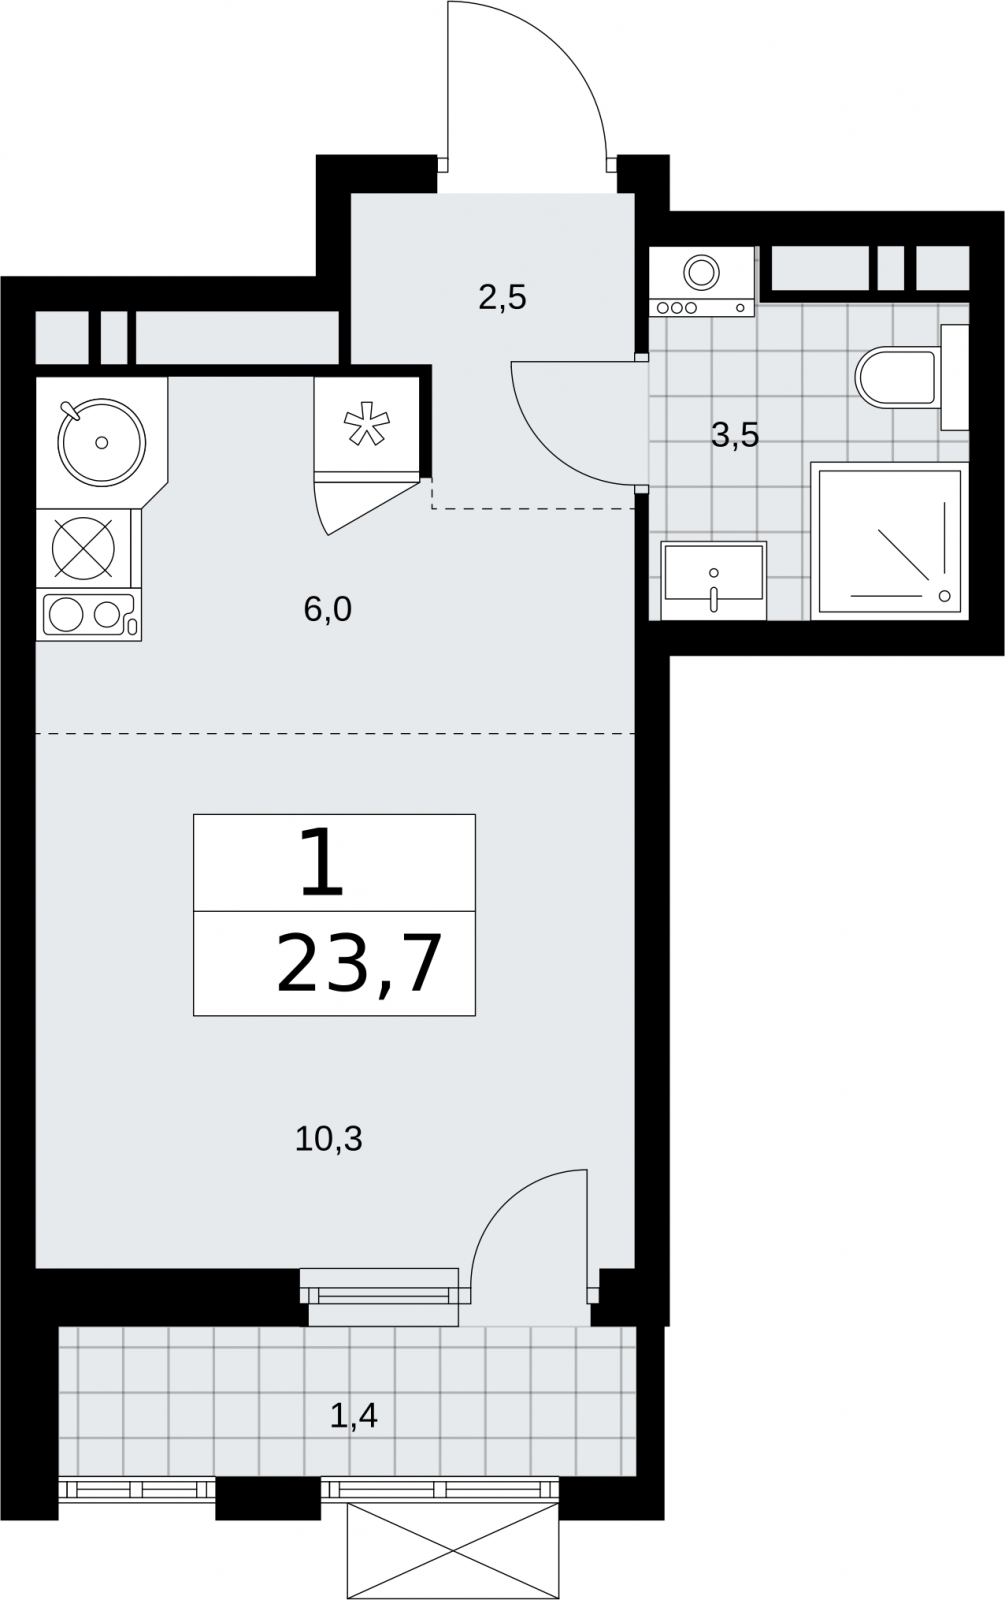 Продается просторная 1-комн. квартира в новом жилом комплексе, недалеко от метро